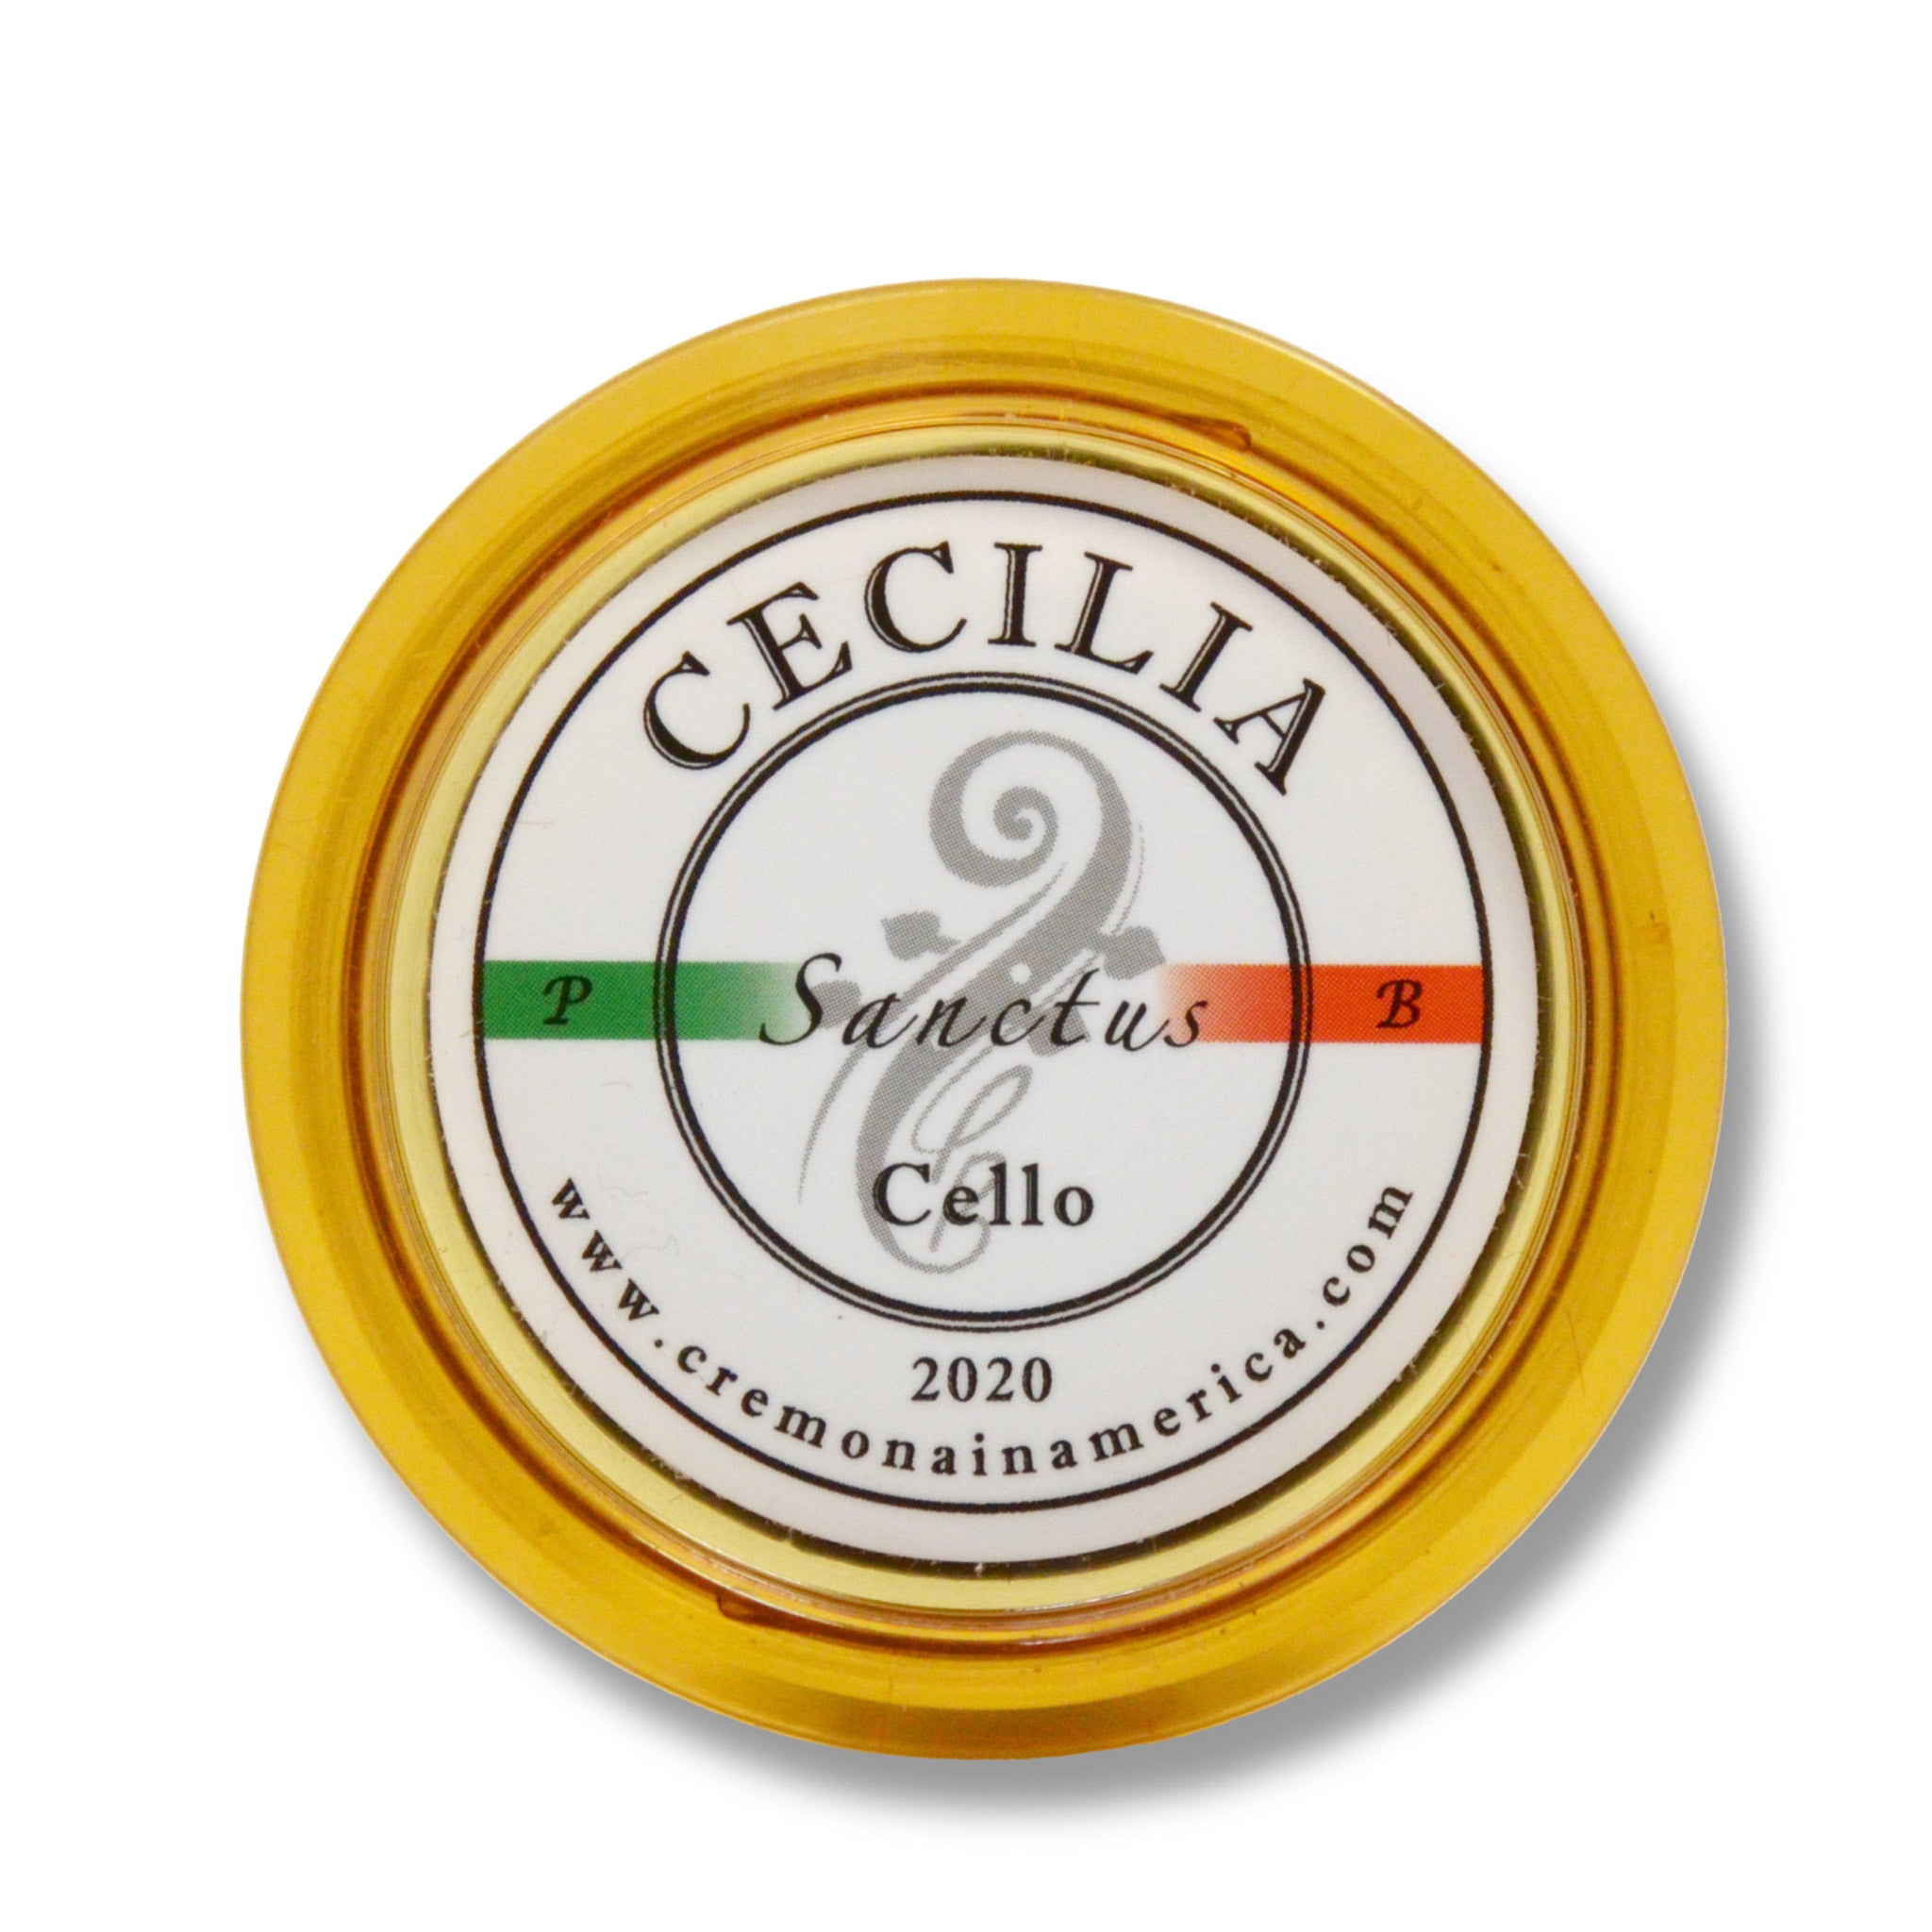 Cecilia Sanctus Cello Rosin